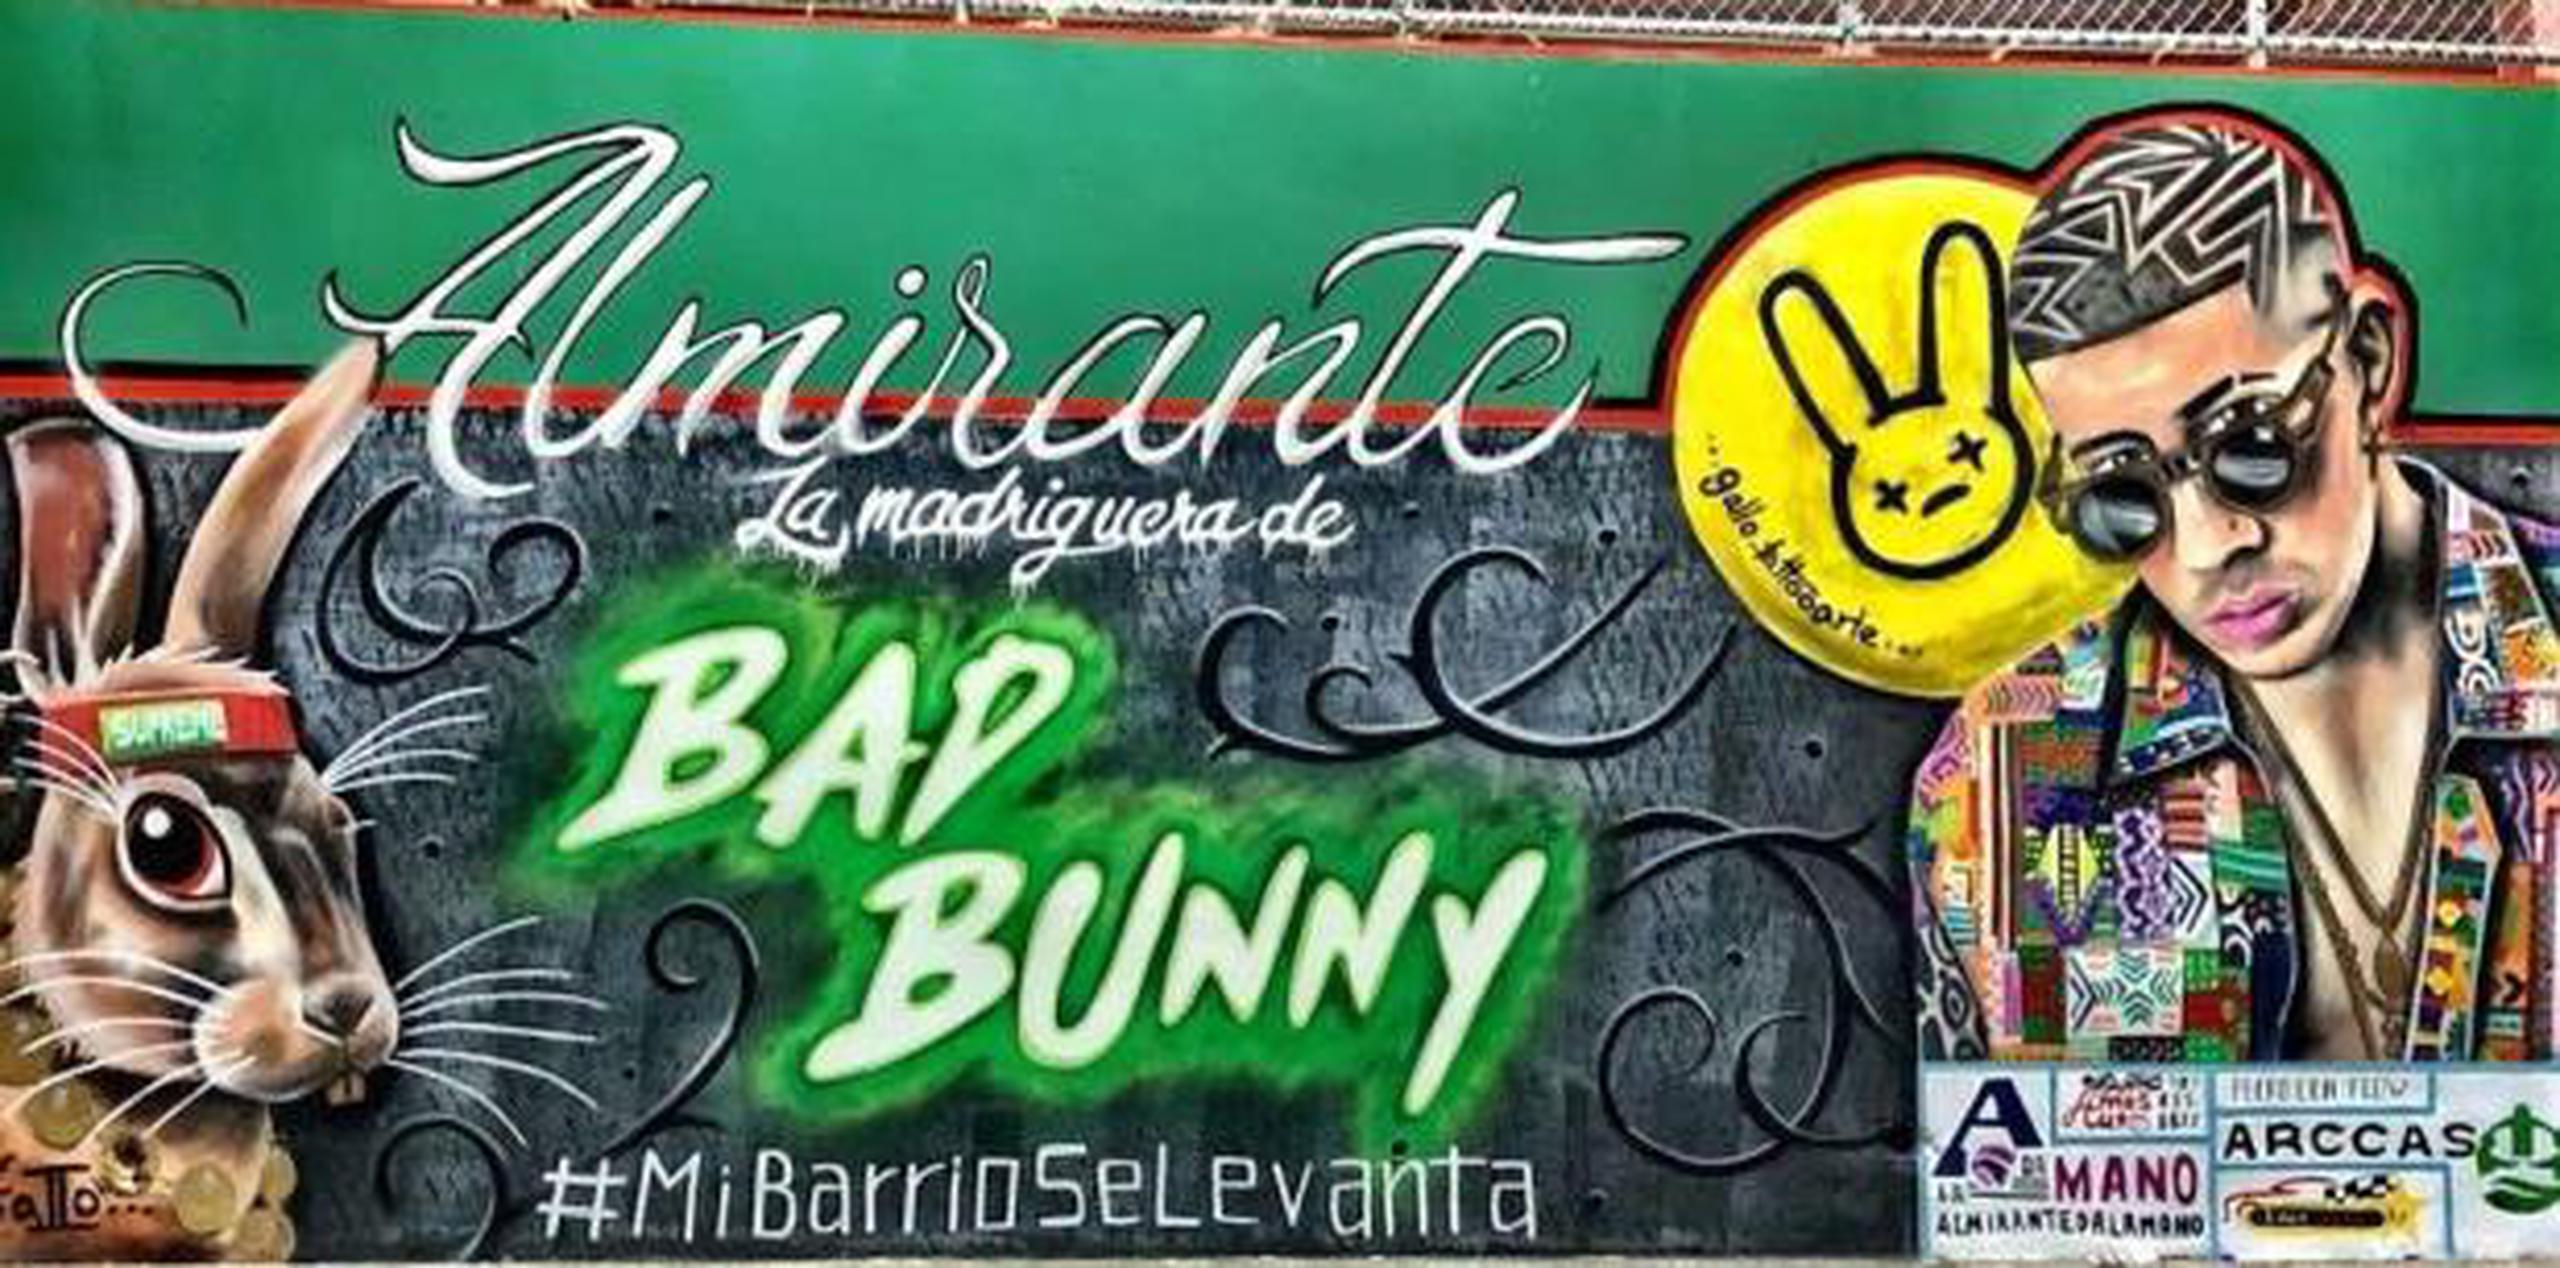 Bad Bunny lideró un esfuerzo nombrado “Mi barrio se levanta”, para proveer suministros y agua a las familias damnificadas. (Suministrada)